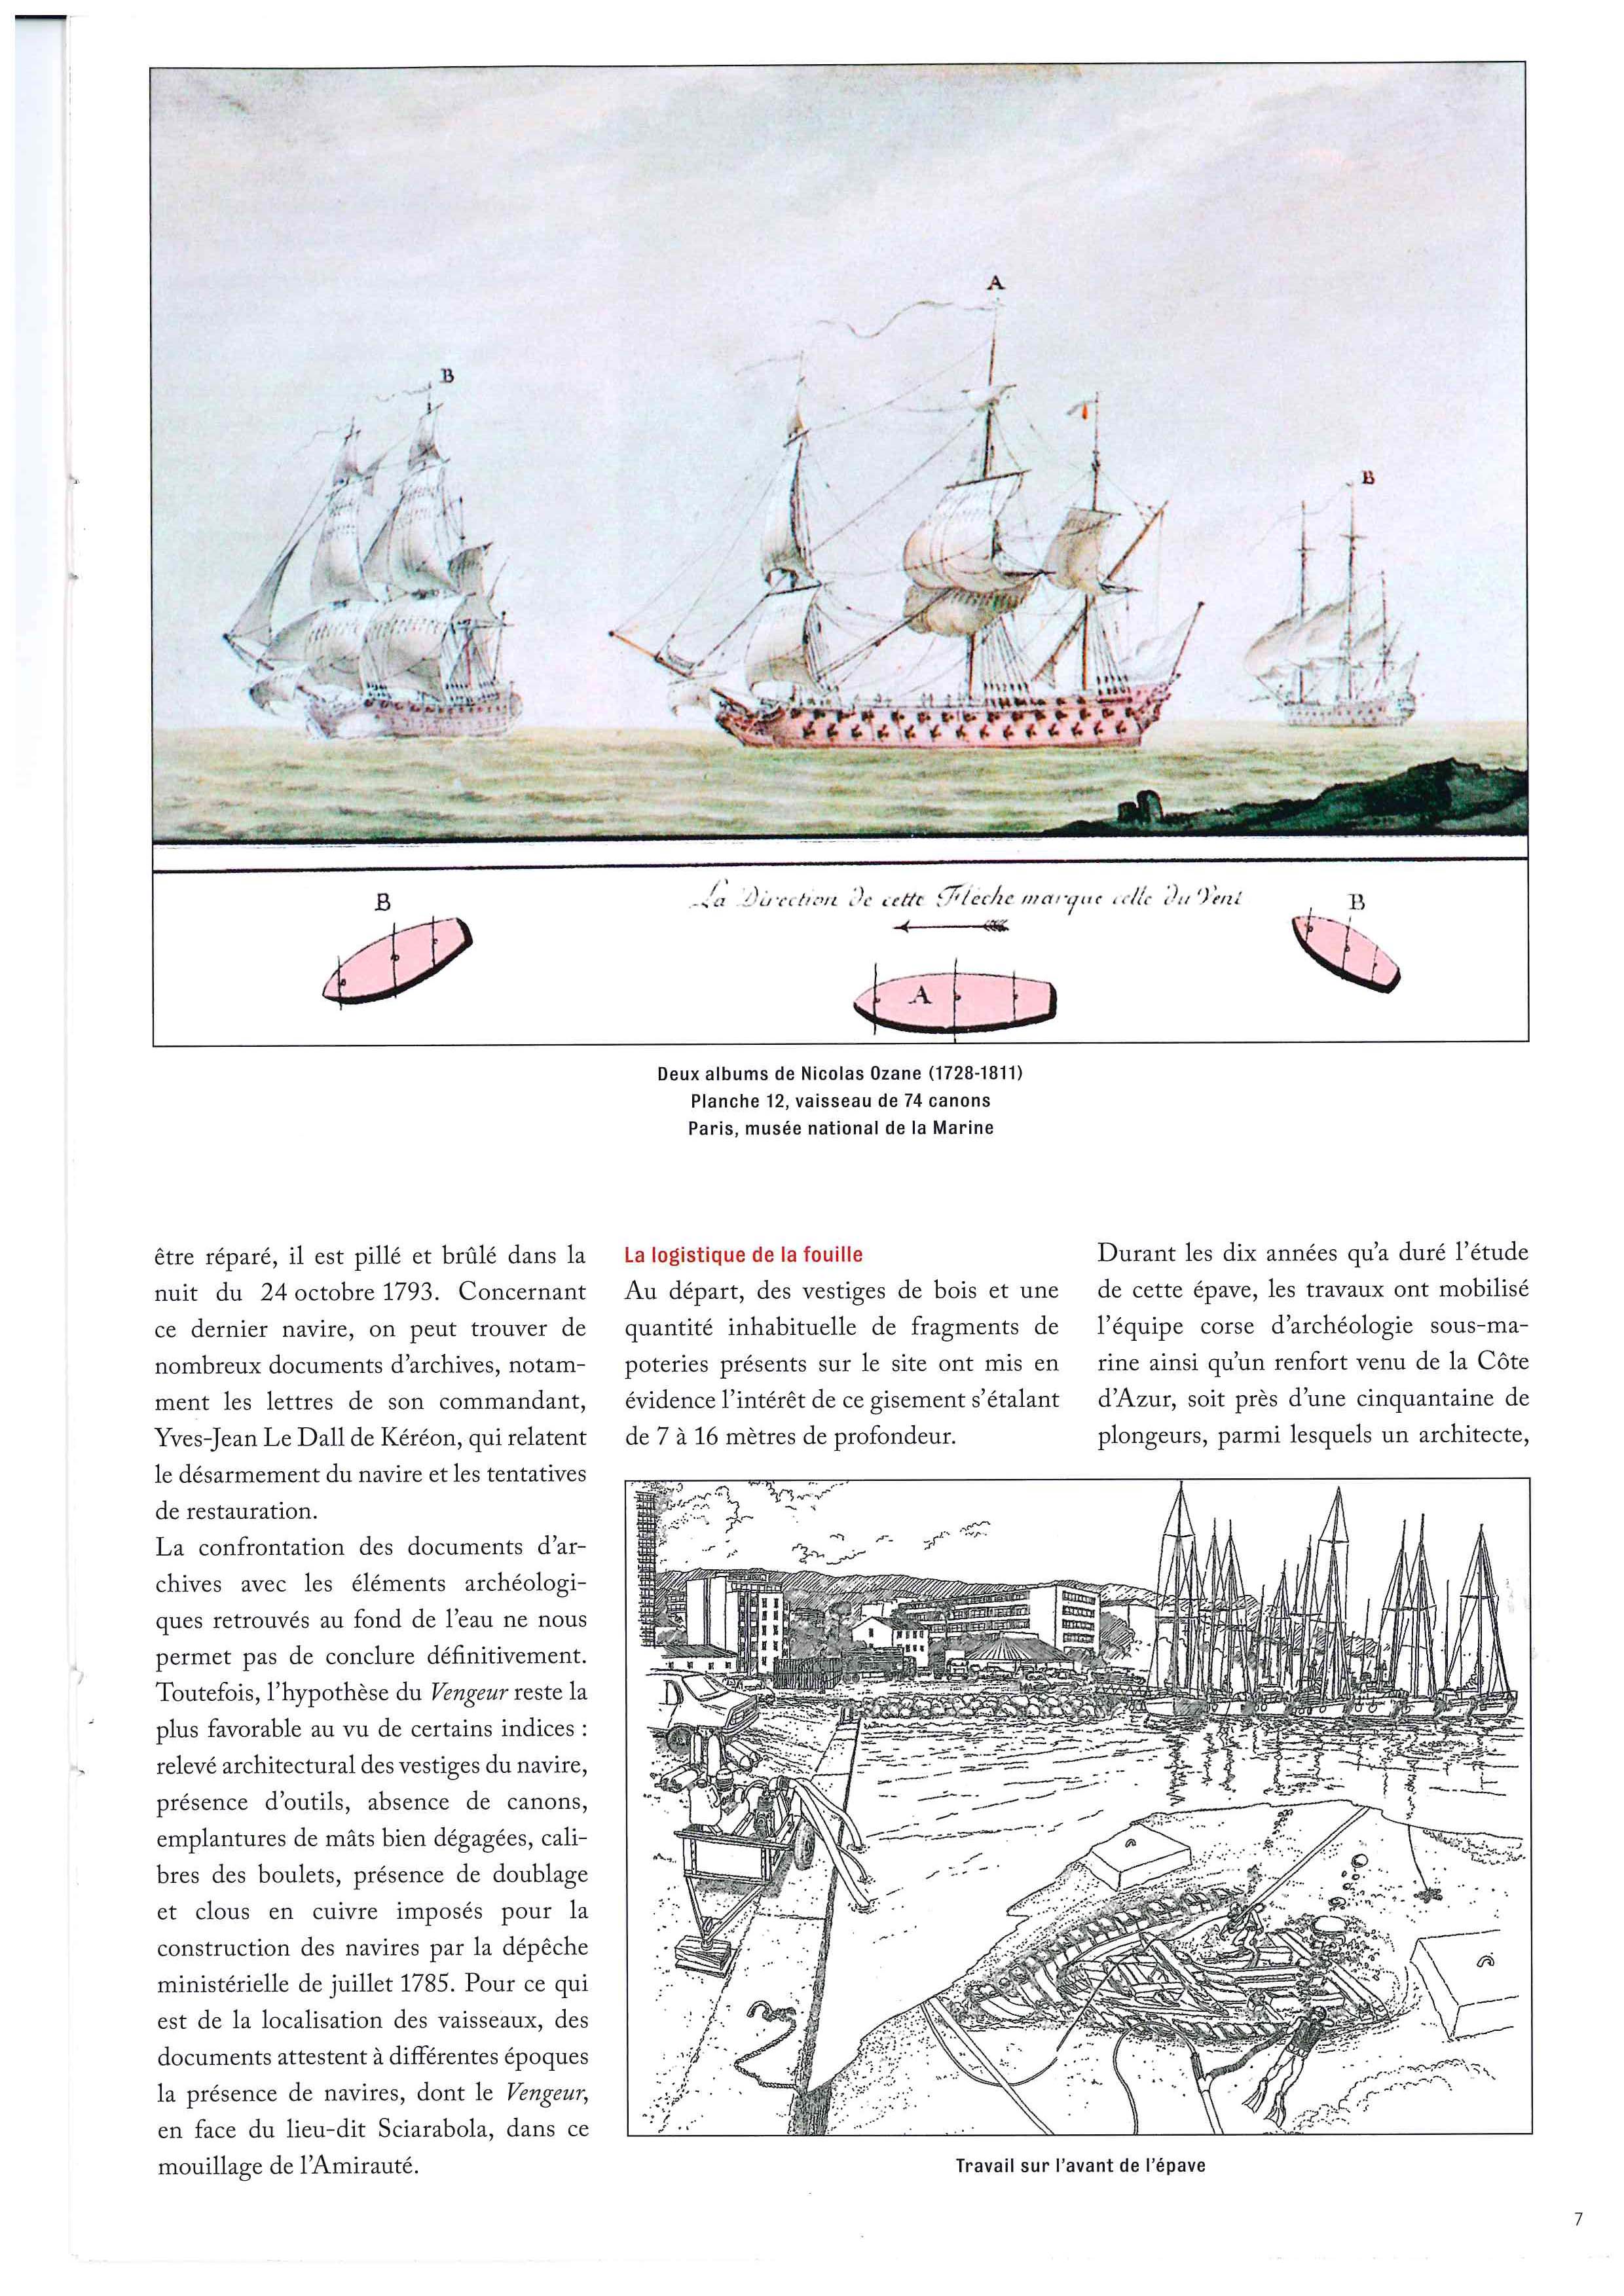 LE PREMIER COMBAT DE BONAPARTE. Mémoire oubliée : un vaisseau de l'expédition de Sardaigne